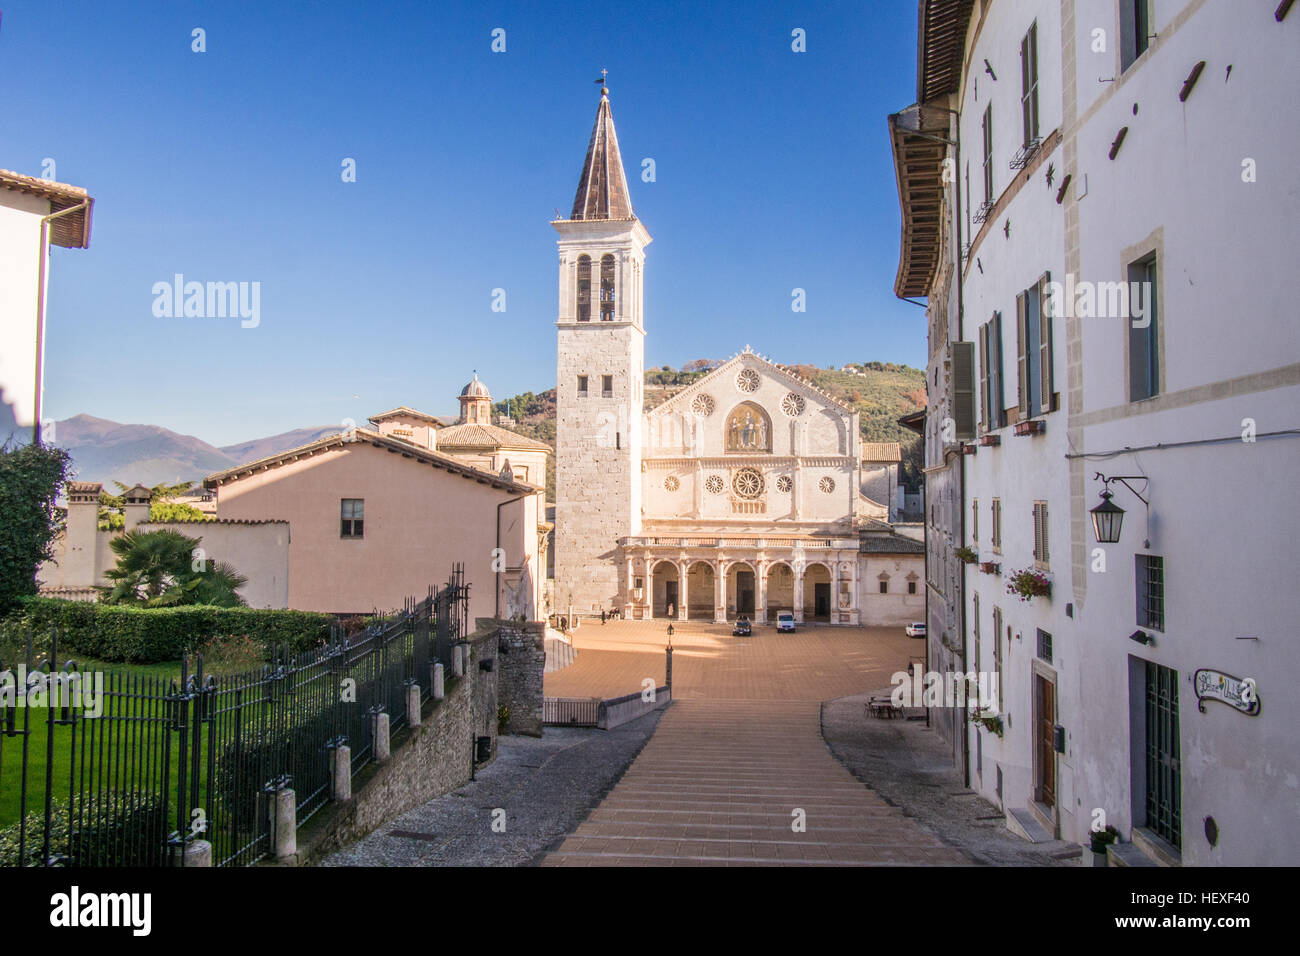 Cathédrale de Spoleto, une ville ancienne, province de Pérouse, Ombrie, Italie. Banque D'Images